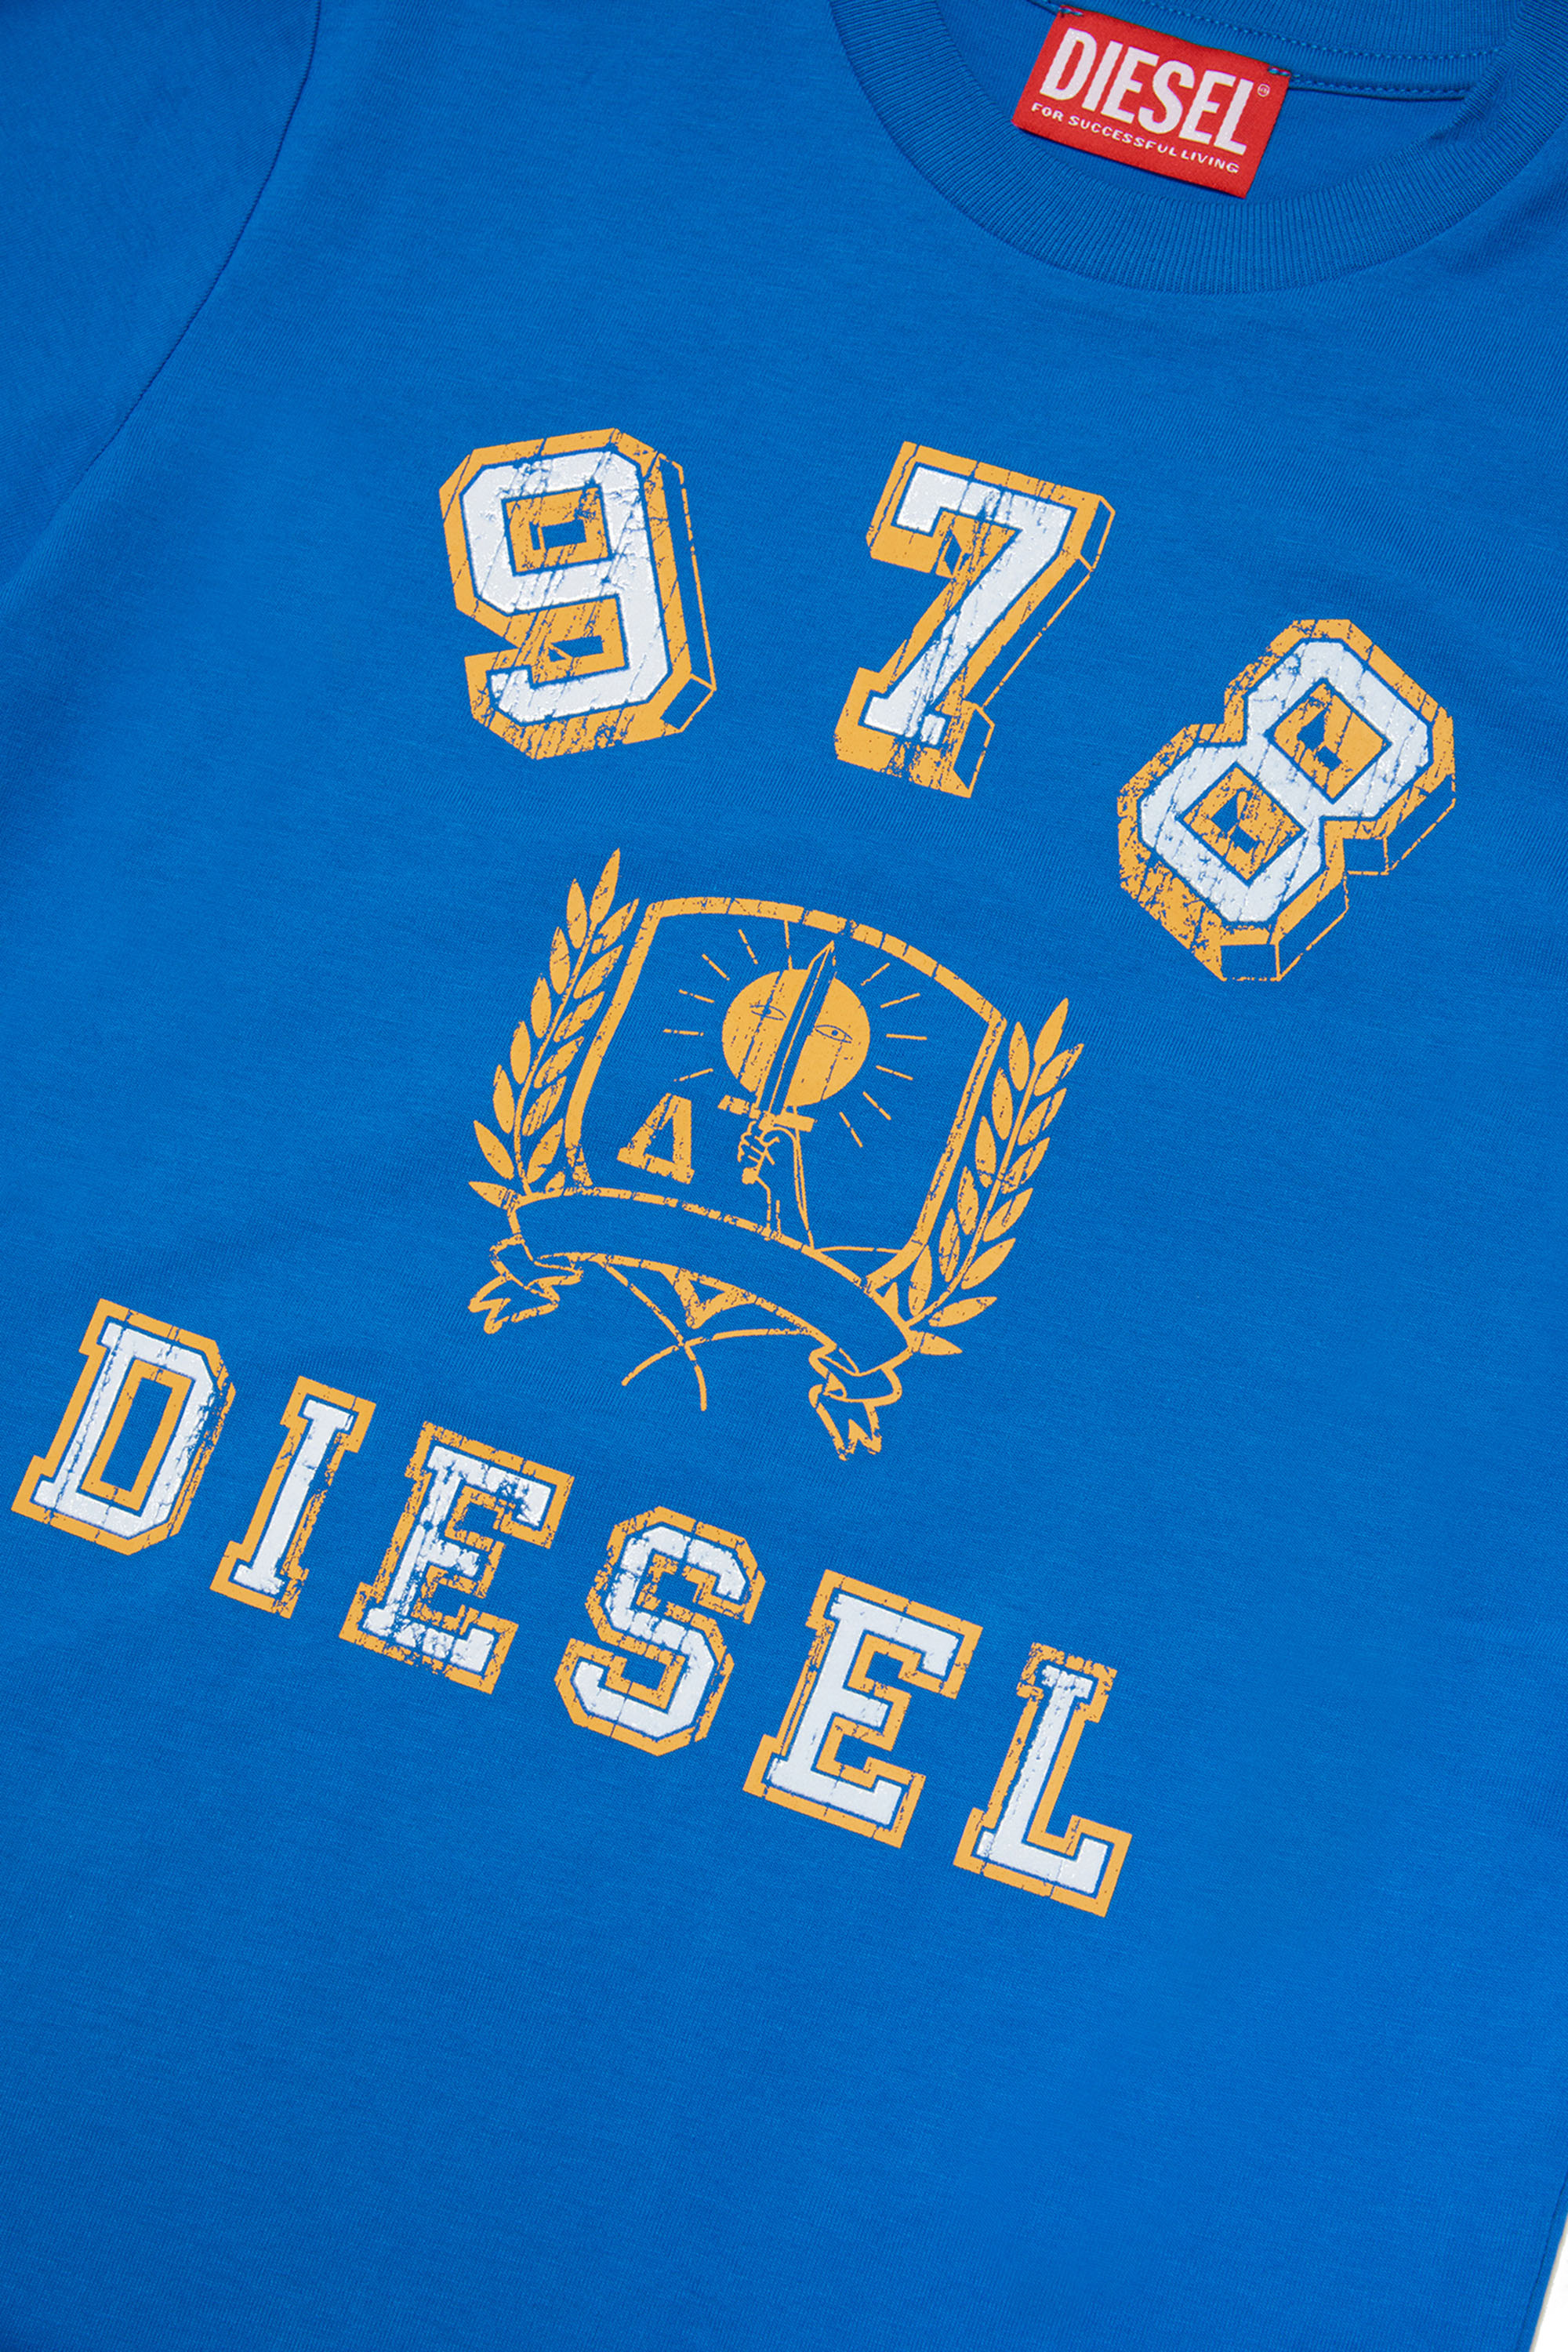 Diesel - TDIEGORE11, Blue - Image 3